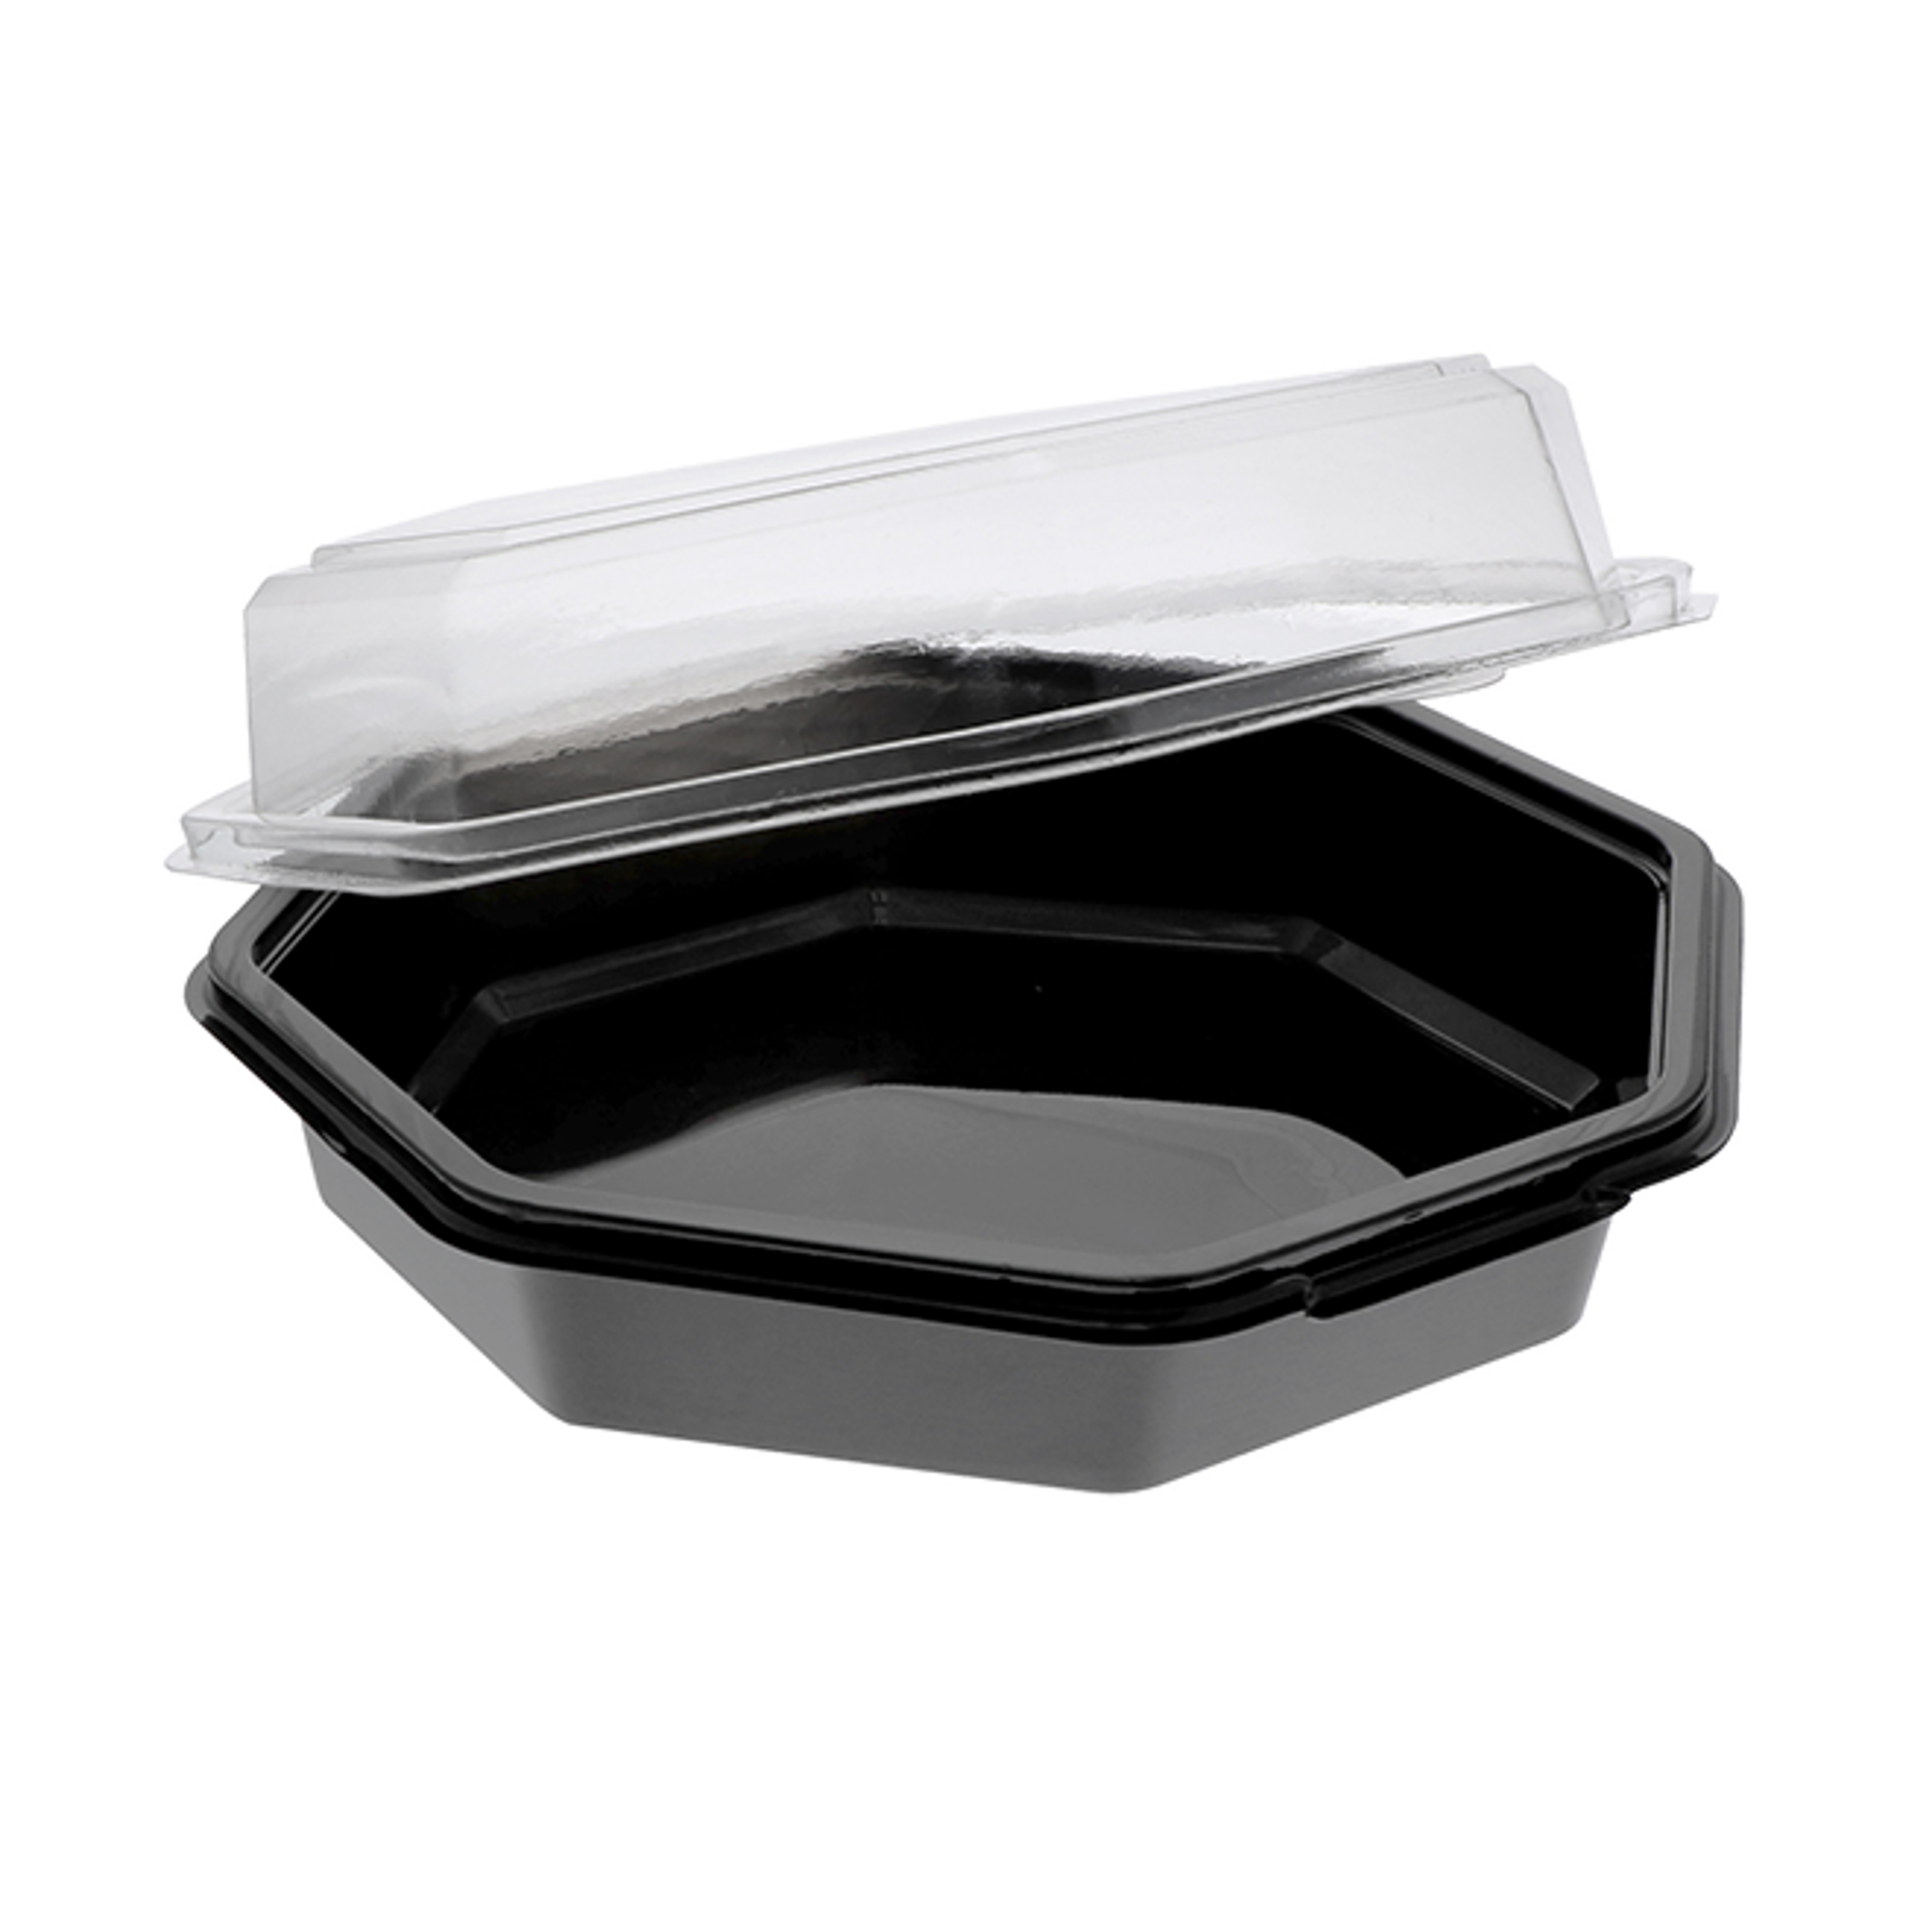 48 oz Disposable Togo Bowls with Lids Black 150 Set